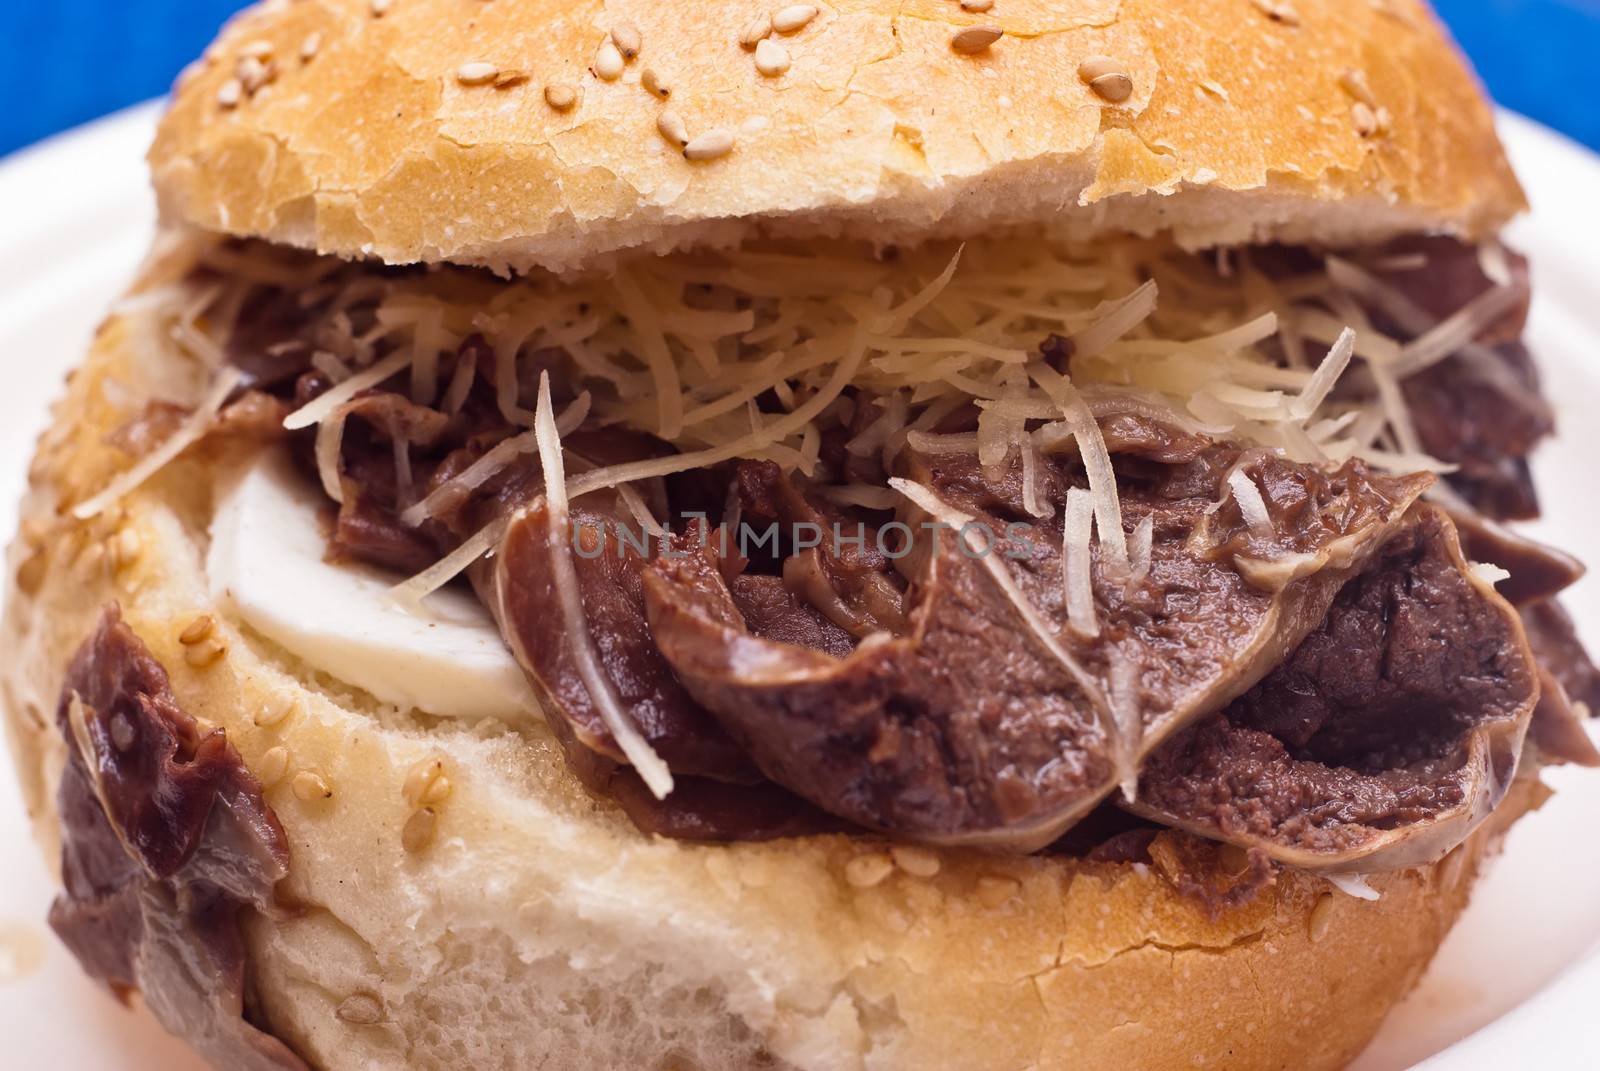 Sandwich with spleen by gandolfocannatella